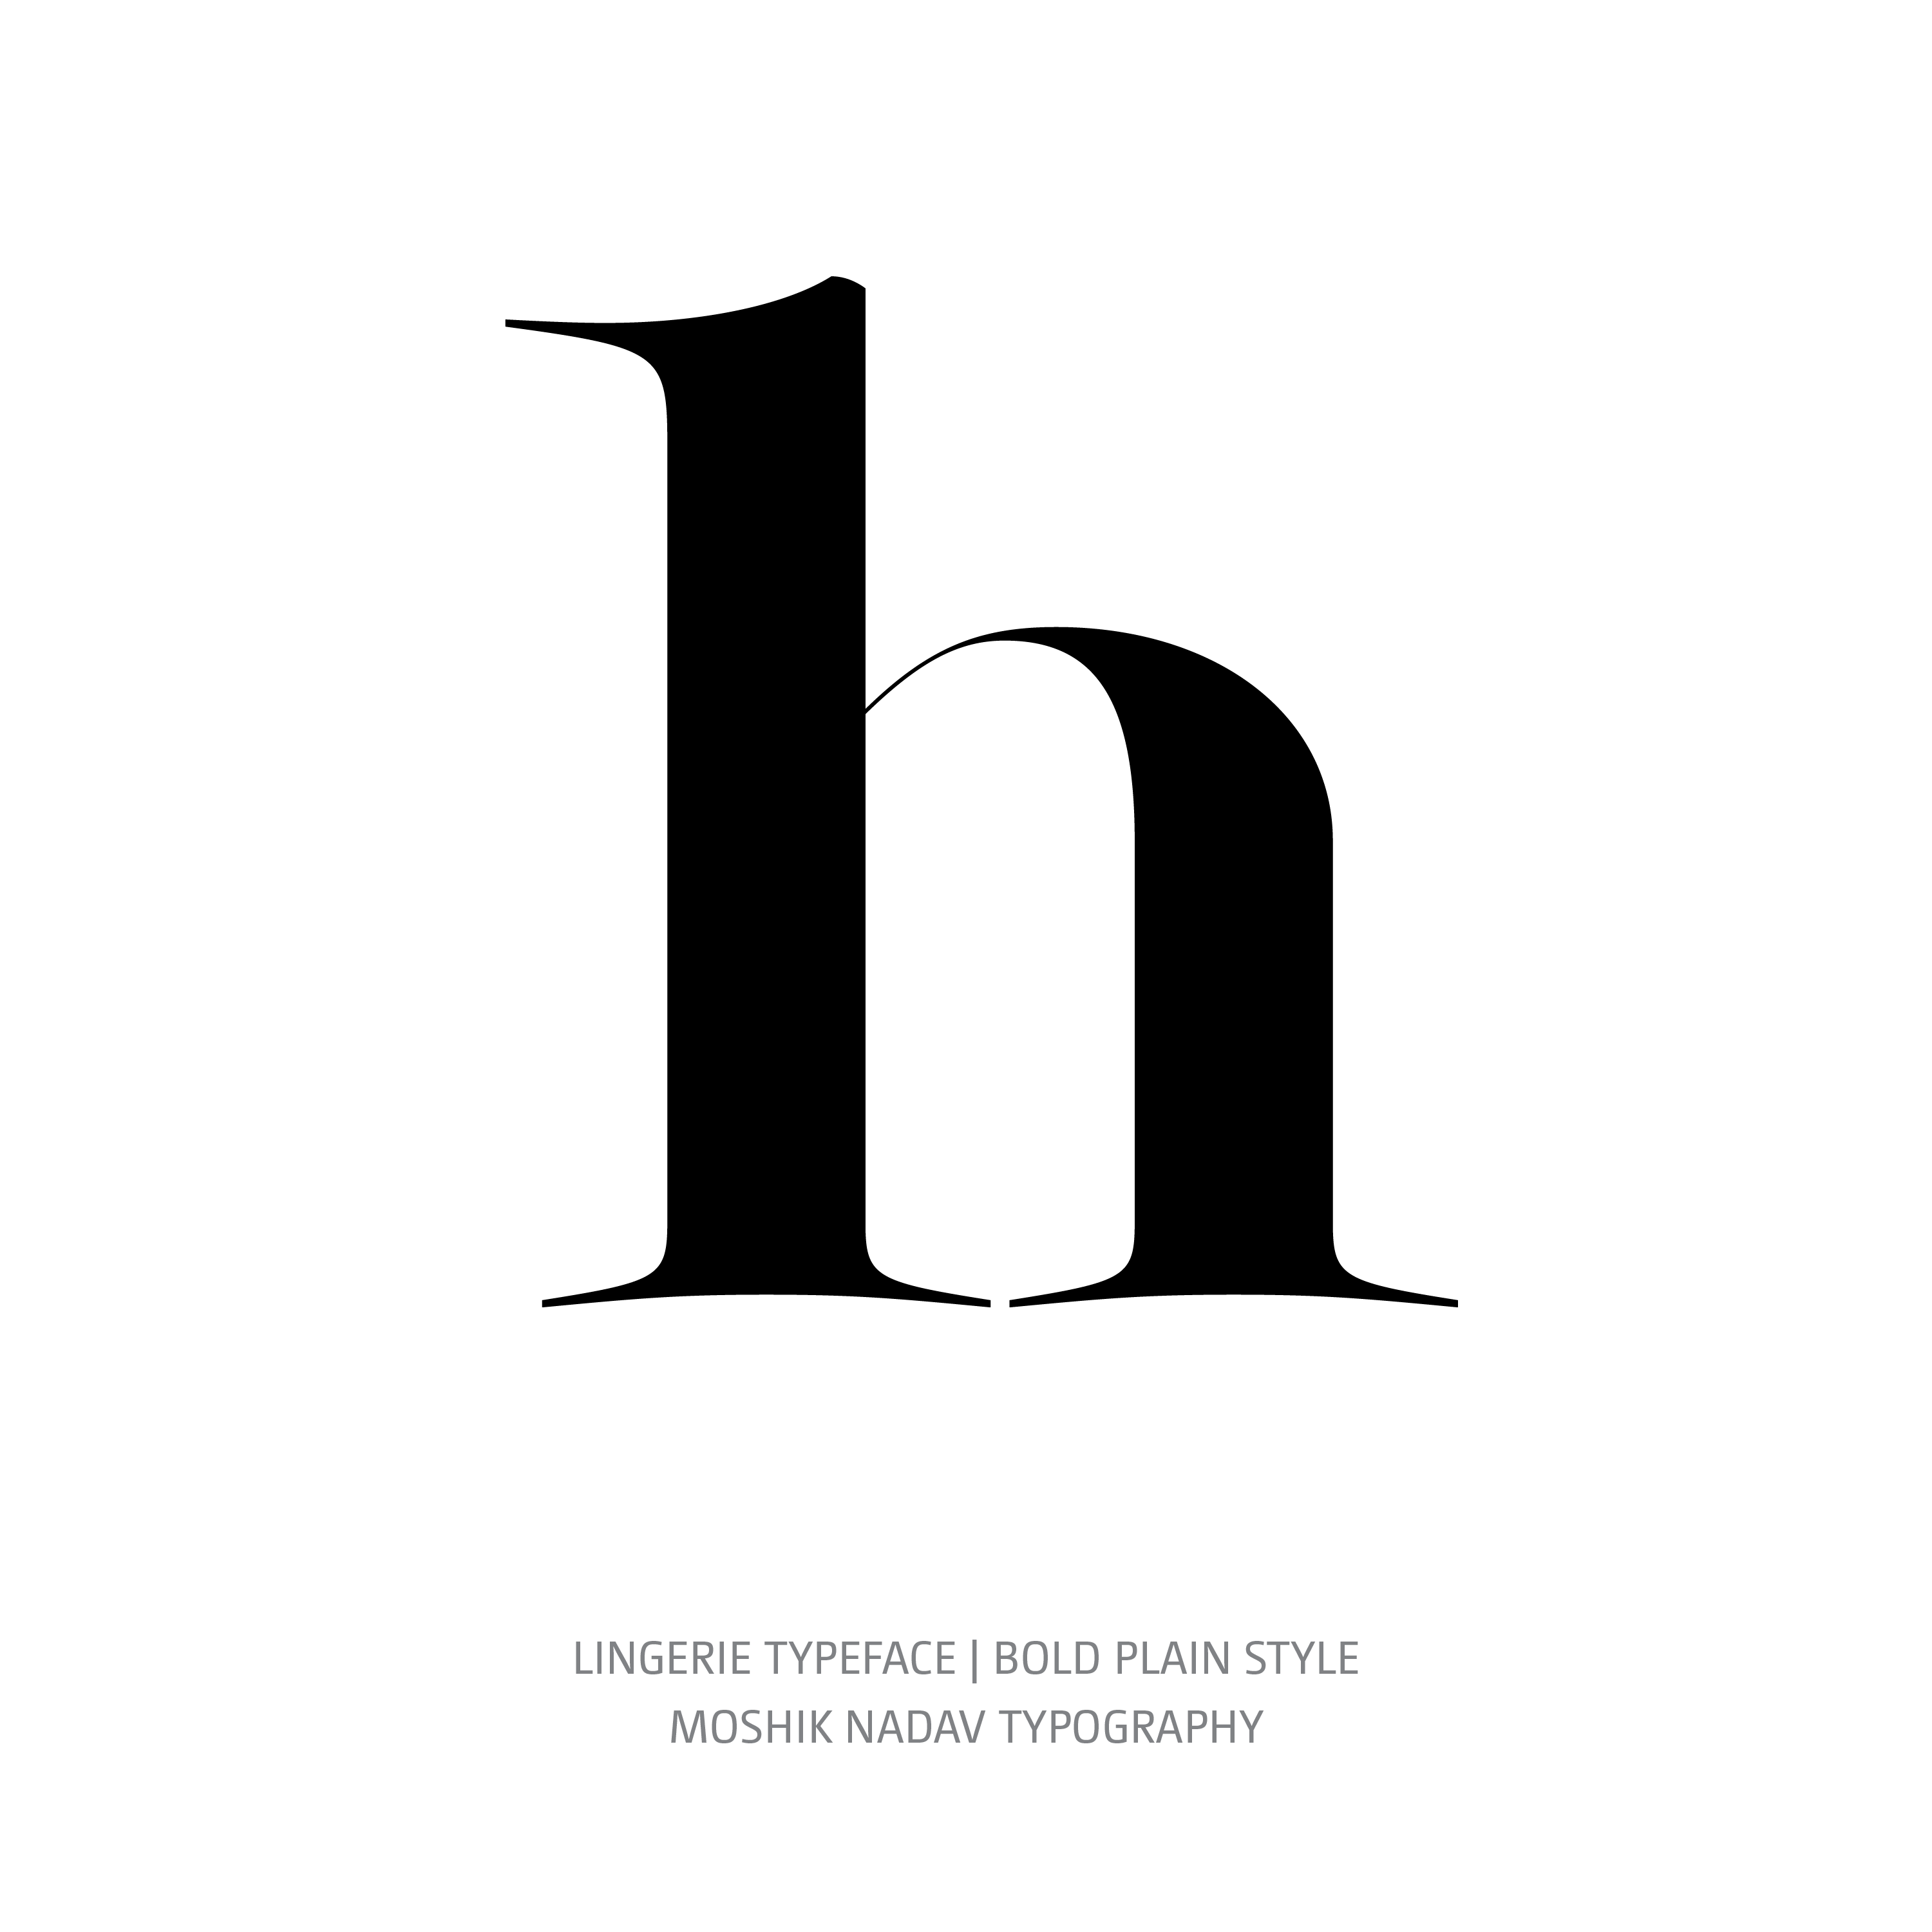 Lingerie Typeface Bold Plain h